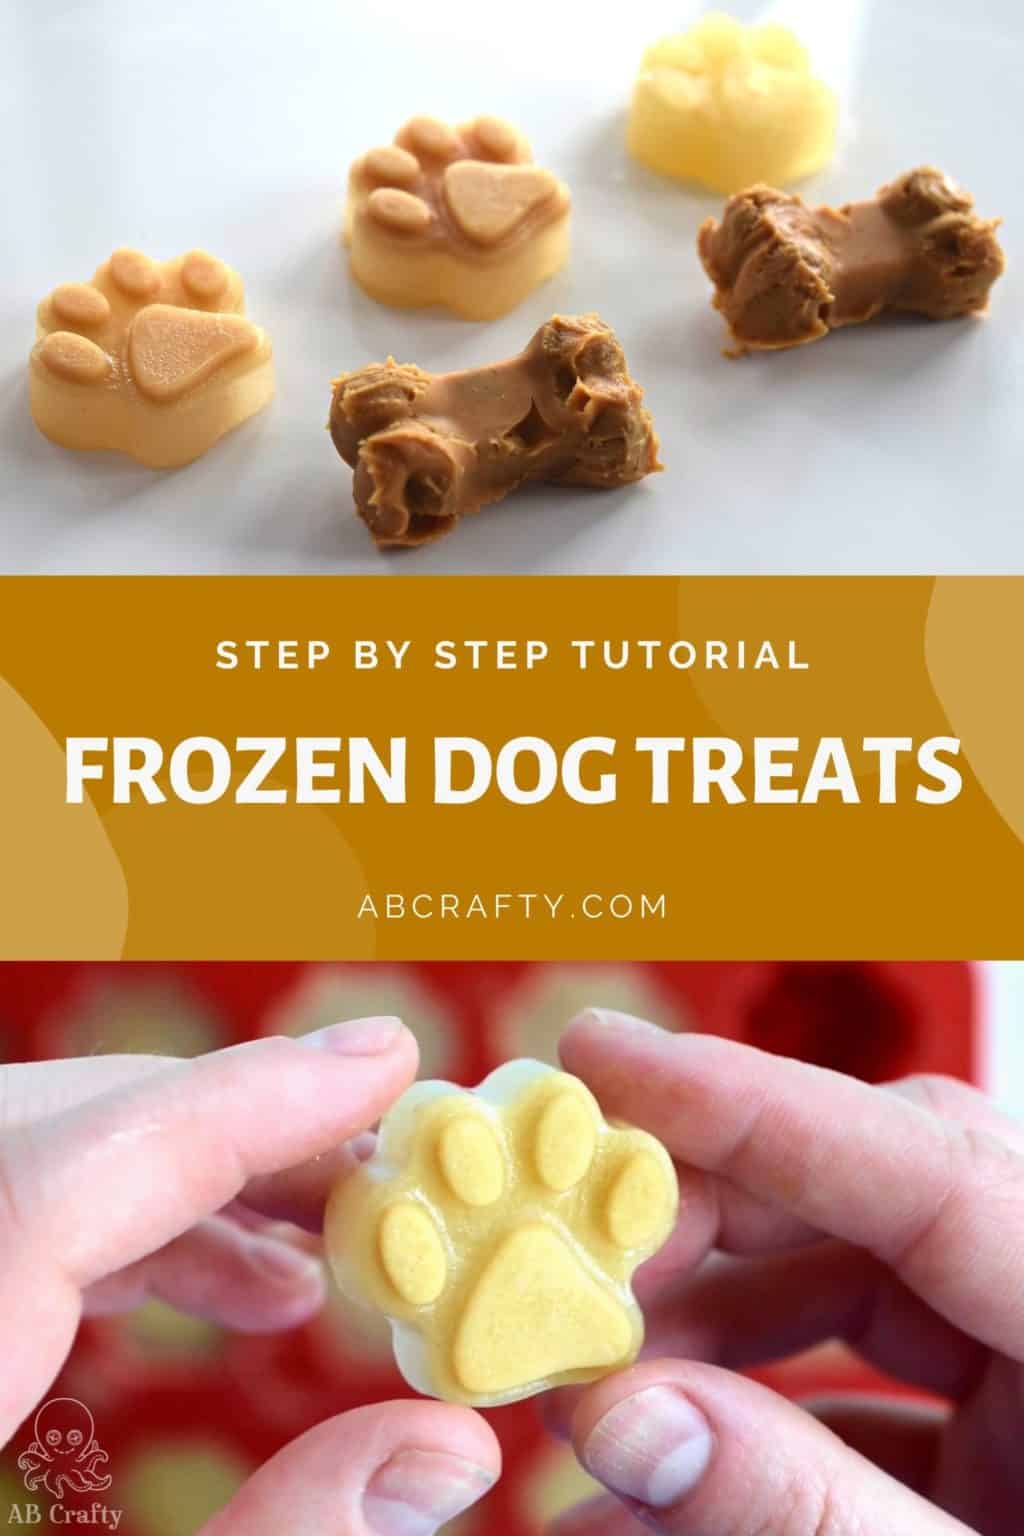 Frozen Dog Treats - 4 Healthy Homemade Dog Treats - AB Crafty